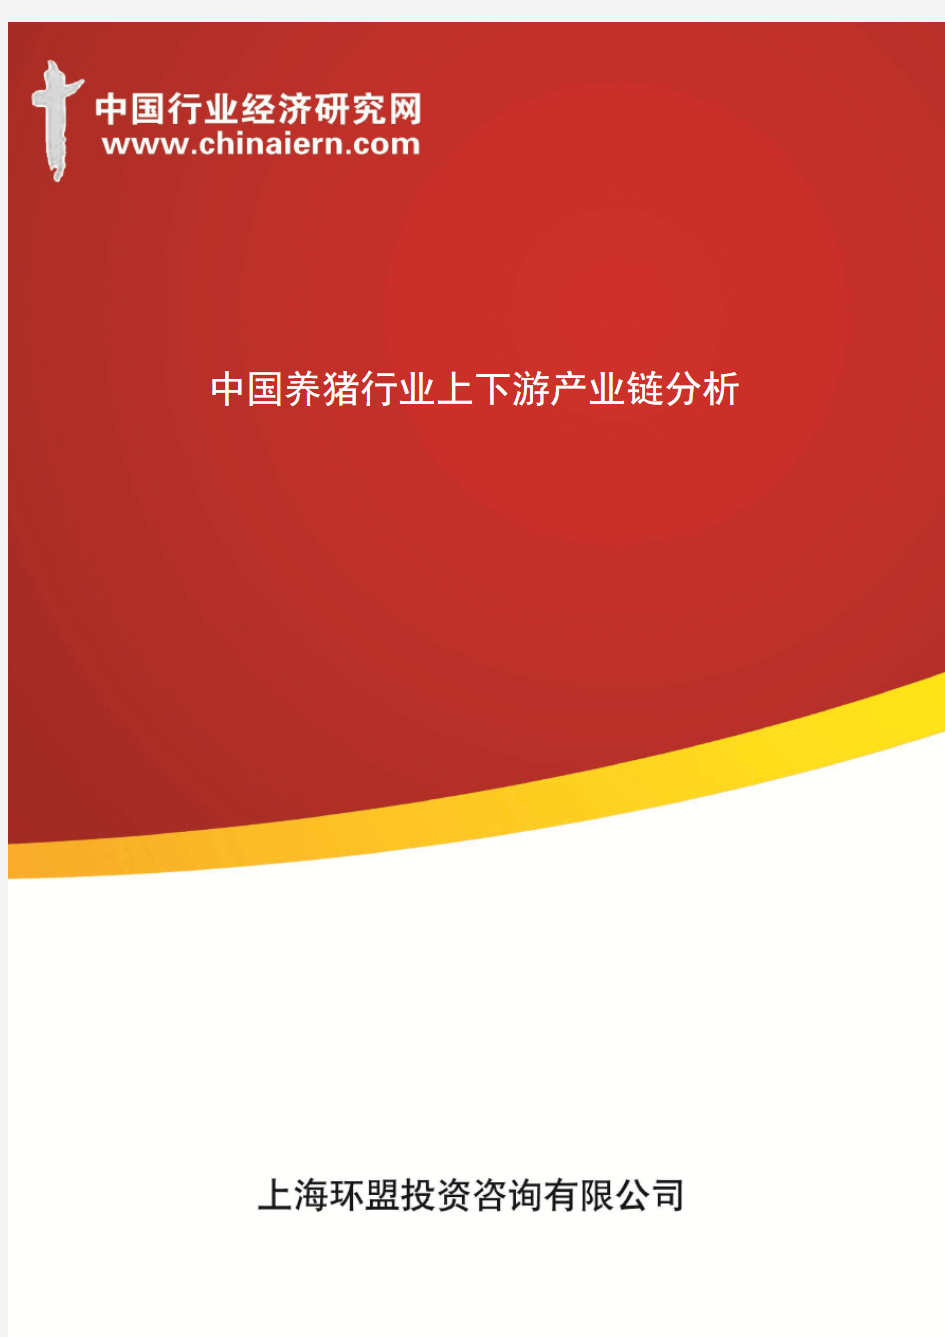 中国养猪行业上下游产业链分析(上海环盟)